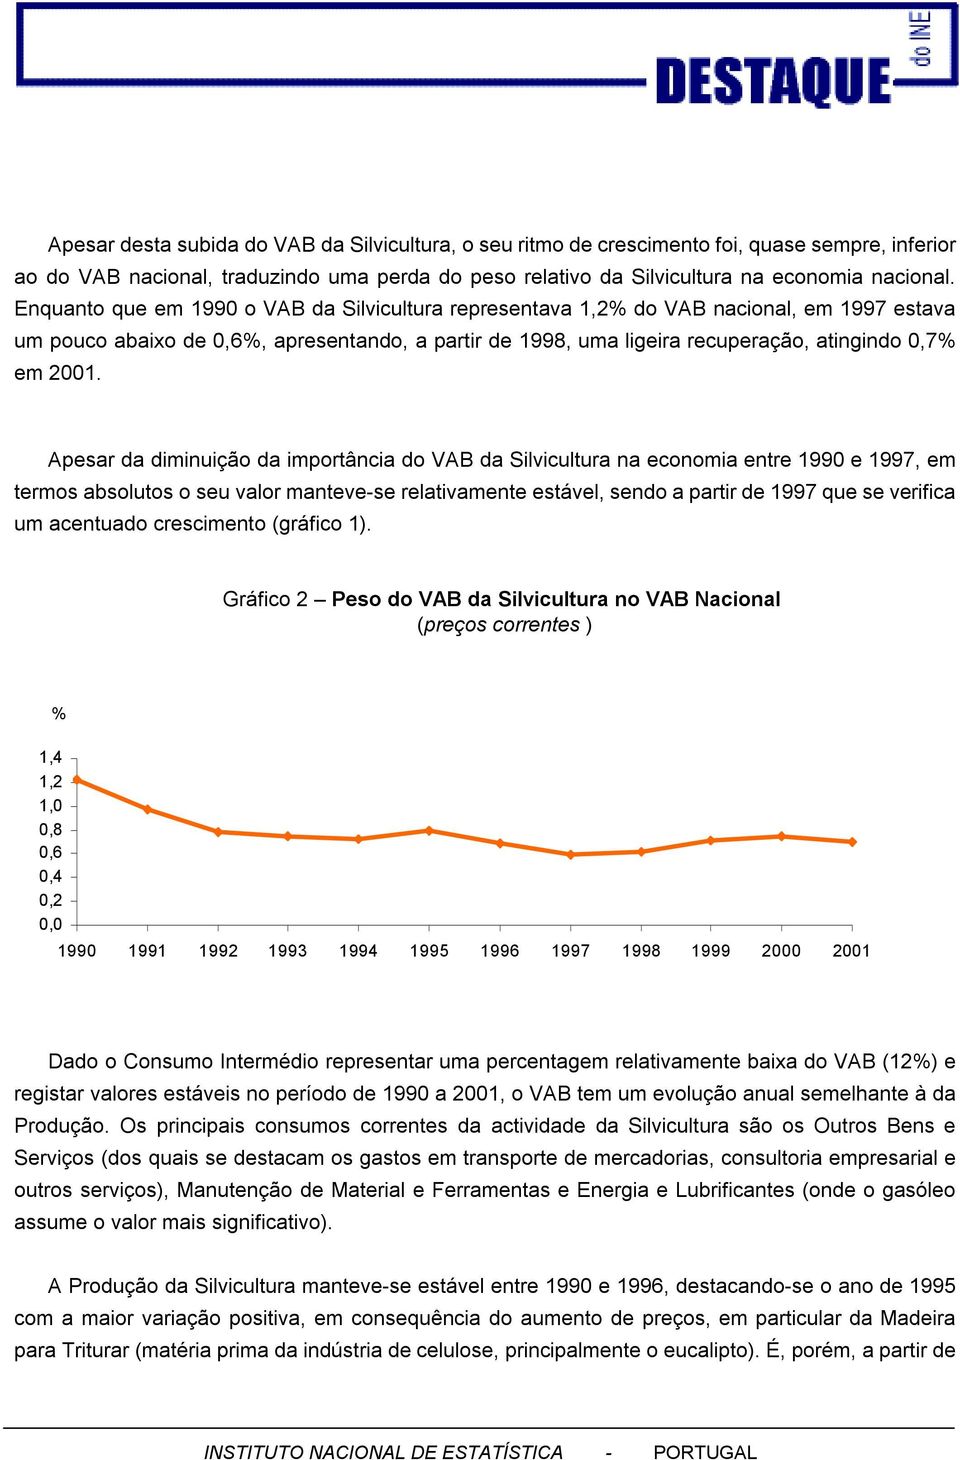 Apesar da diminuição da importância do VAB da Silvicultura na economia entre 199 e 1997, em termos absolutos o seu valor manteve-se relativamente estável, sendo a partir de 1997 que se verifica um